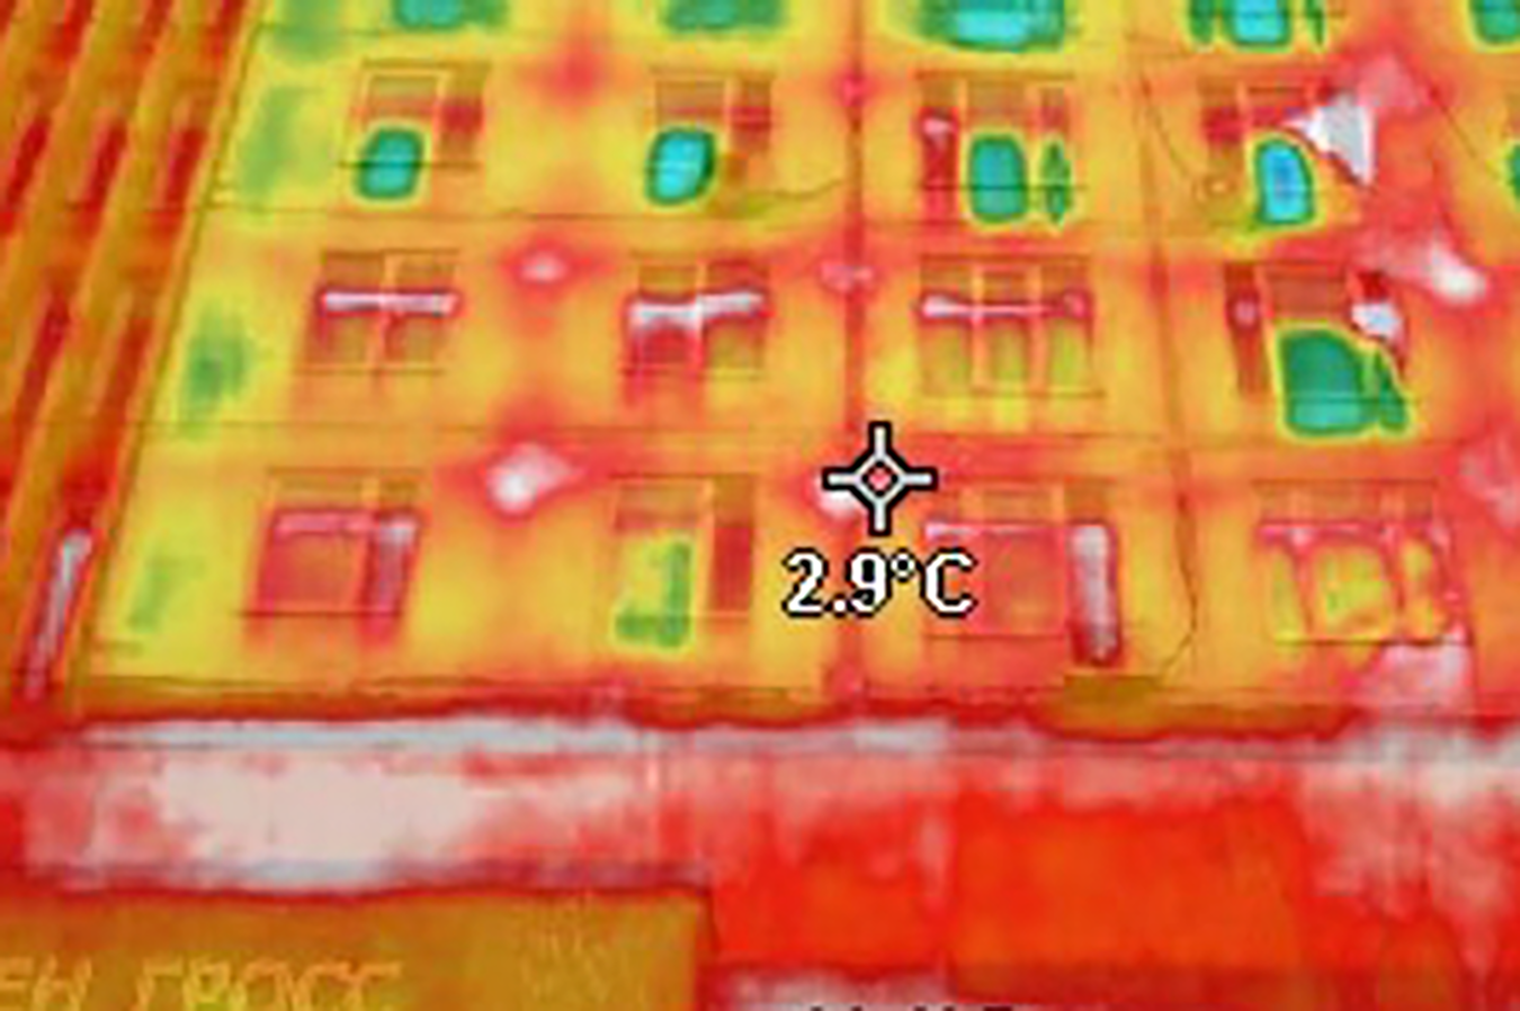 Дом сохраняет лишь 29% тепла, а остальное улетучивается. Источник: сообщество «Индекс тепла» во «Вконтакте»